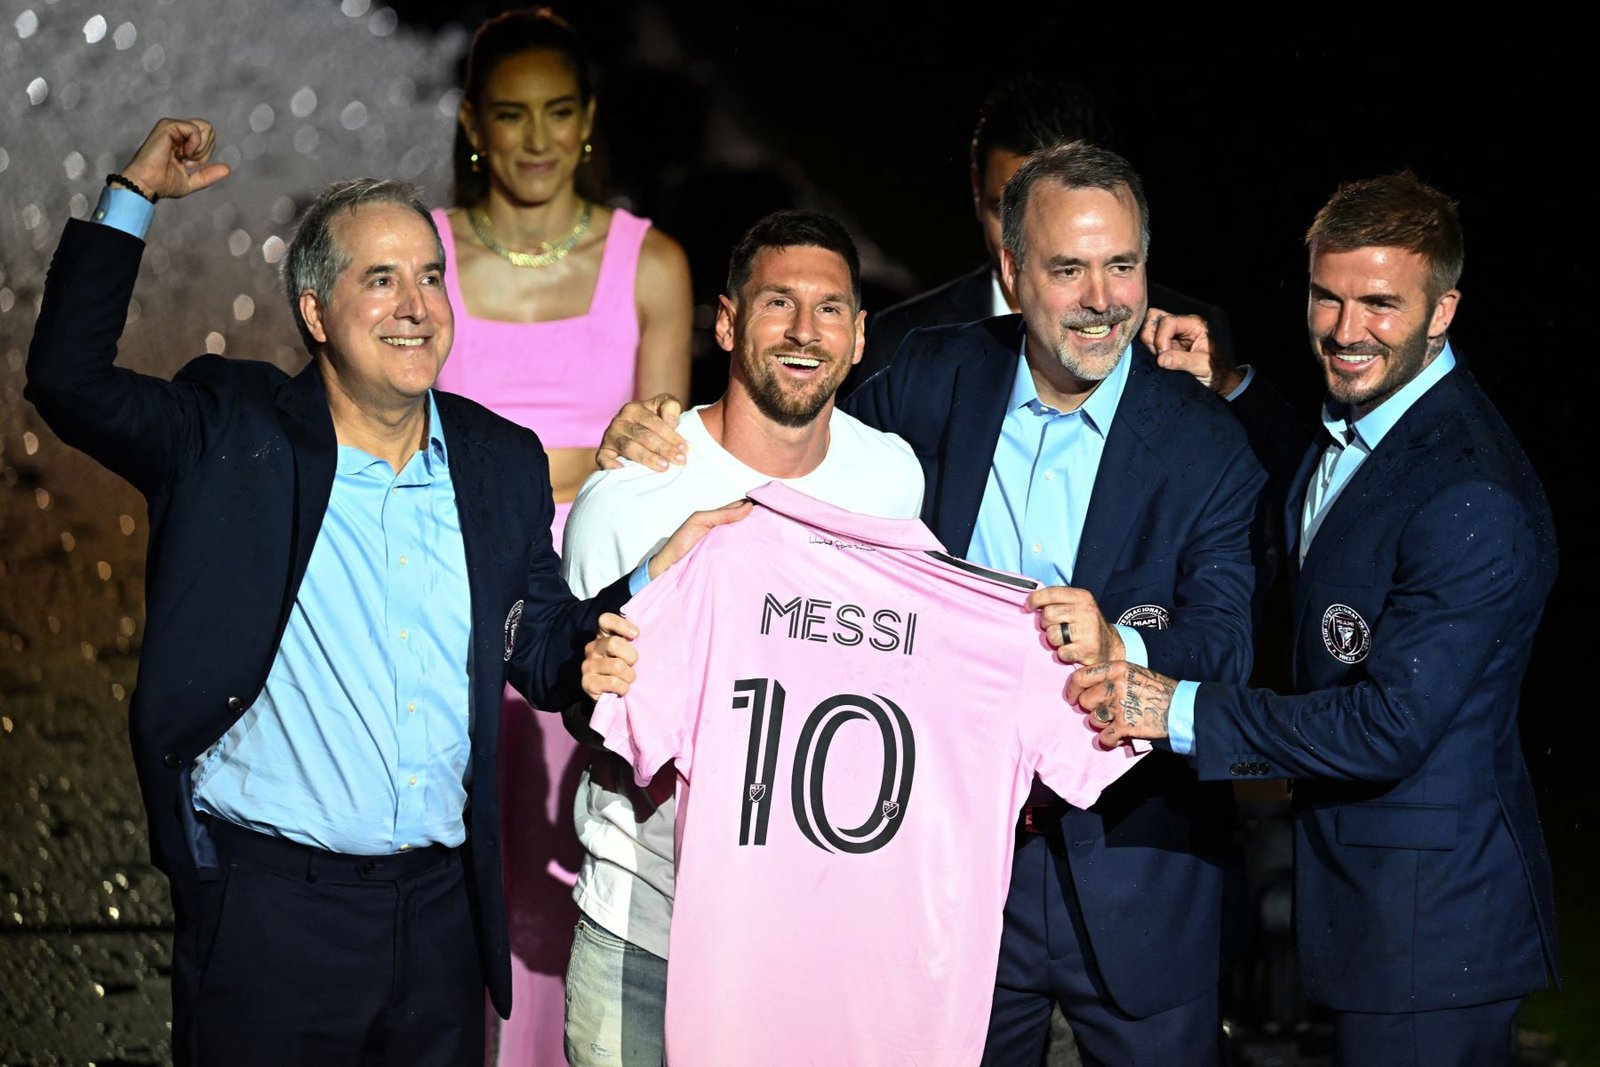 Messi en Miami: “Estoy muy feliz de haber elegido este proyecto”